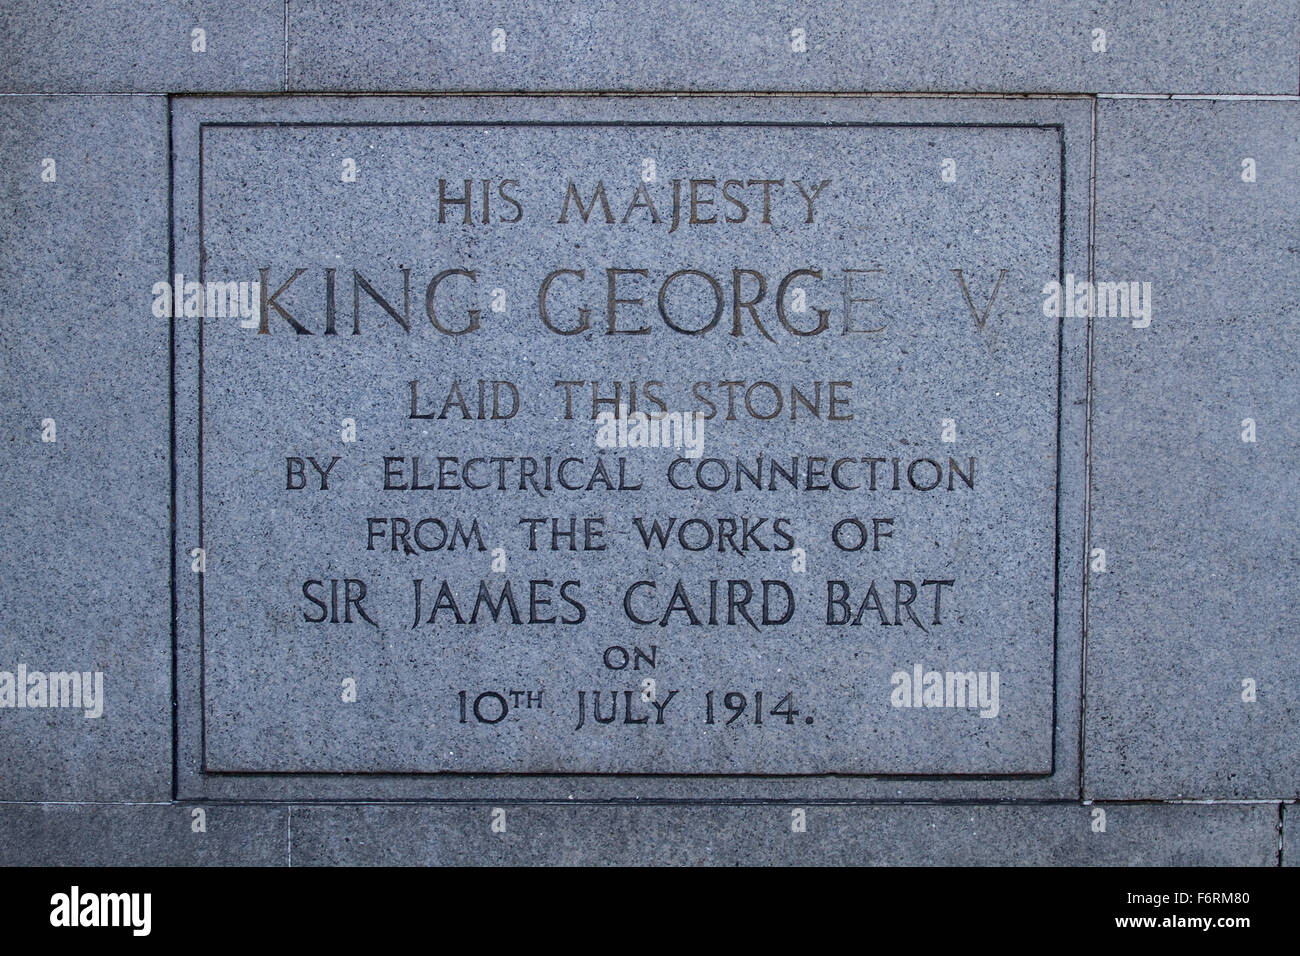 Re Giorgio V di cui questa placca incisa nel 1914 per commemorare le opere di Sir James Caird Bart a Dundee, Regno Unito Foto Stock